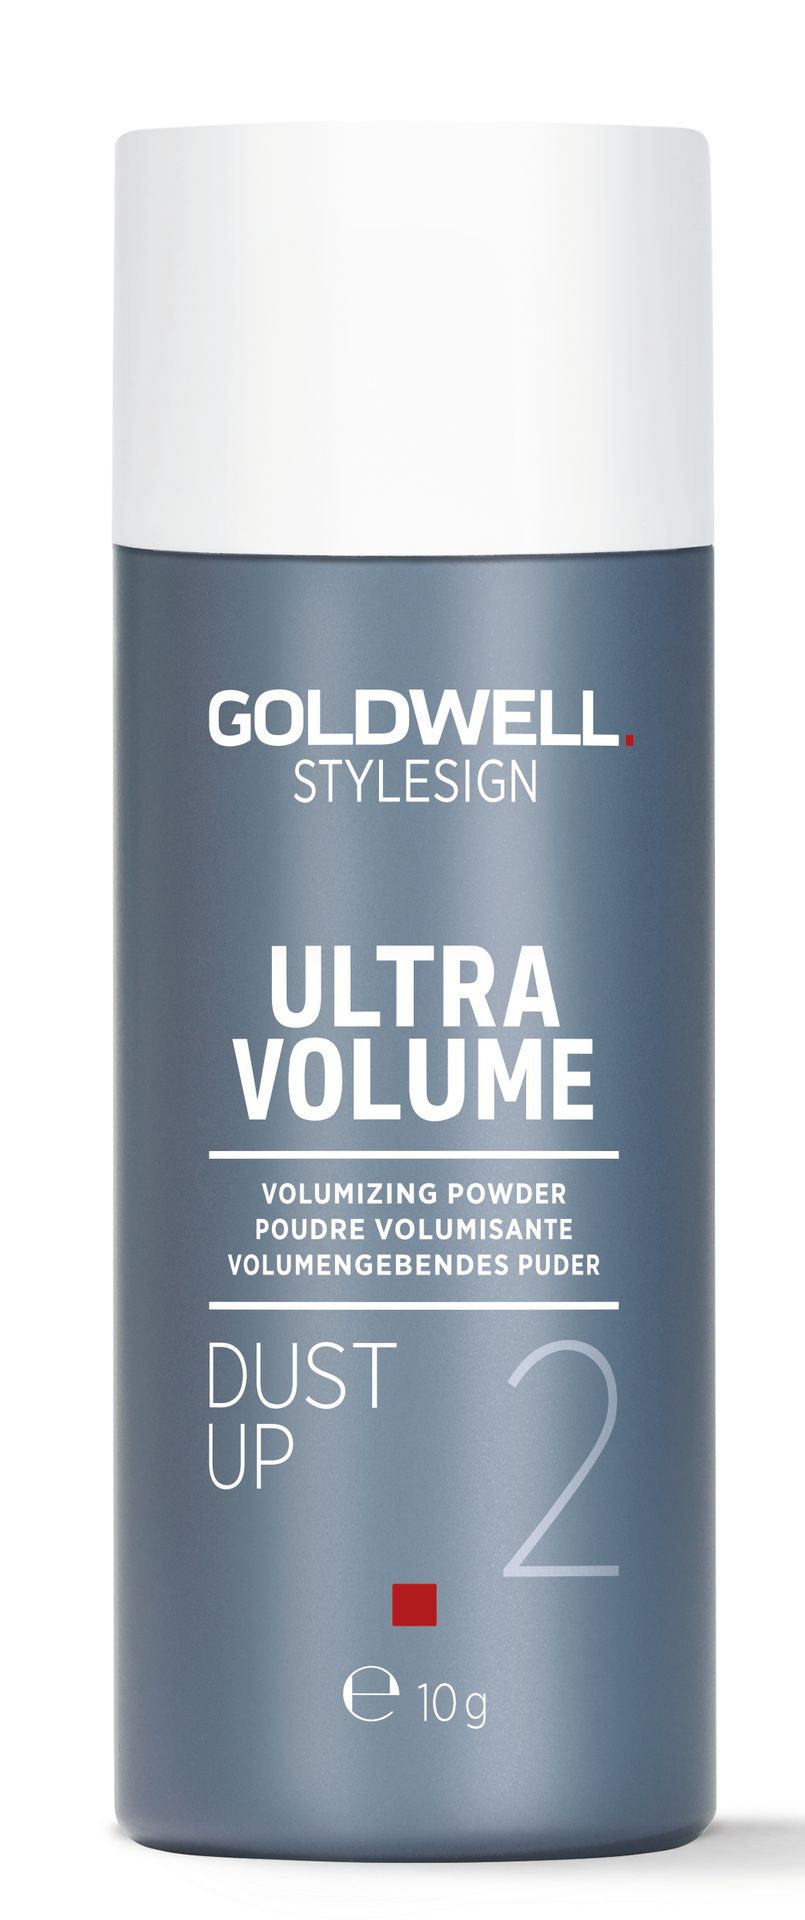 Goldwell Stylesign UV Dust Up 10g Puder nadający objętość